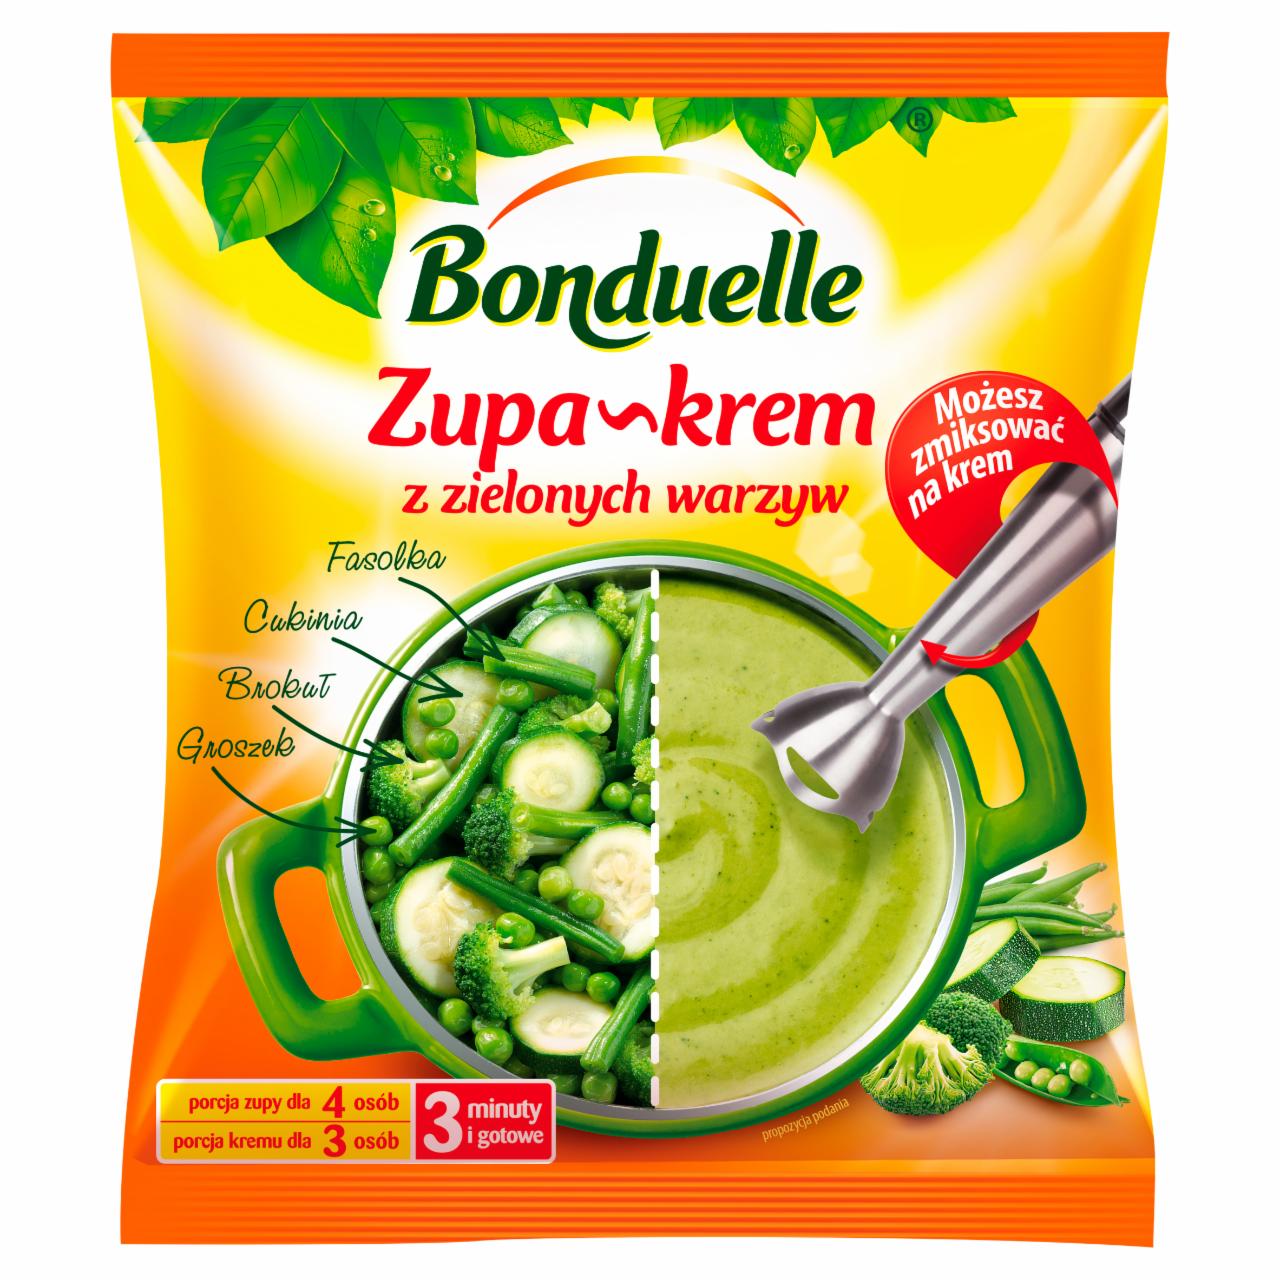 Zdjęcia - Bonduelle Zupa-krem z zielonych warzyw 400 g